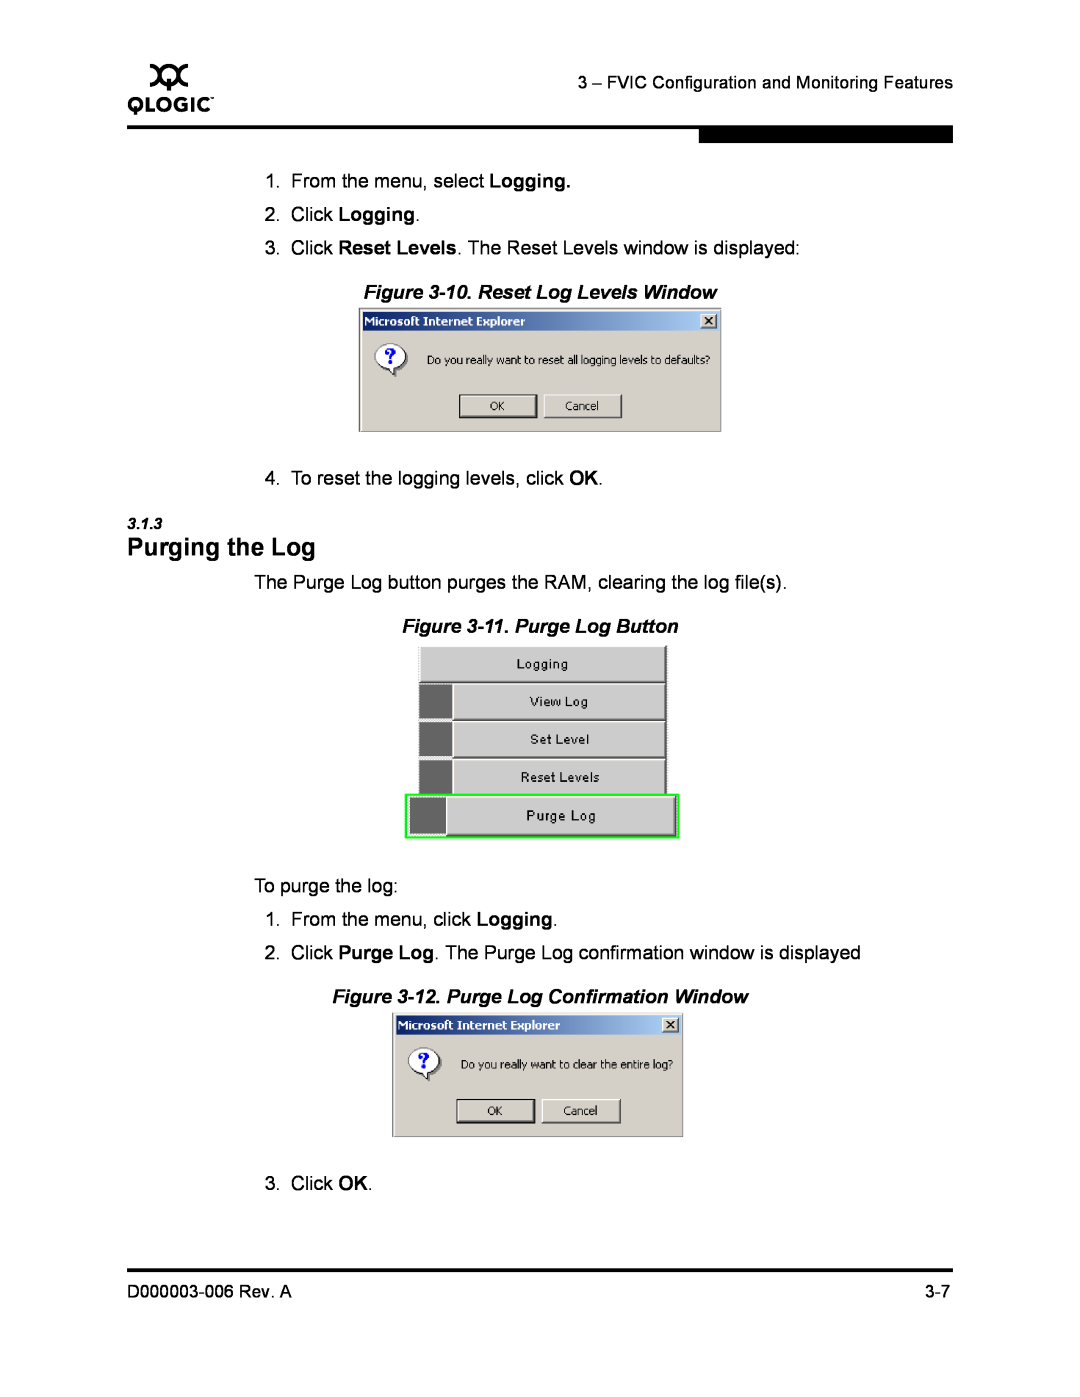 Q-Logic 9000 manual 10. Reset Log Levels Window, 11. Purge Log Button, 12. Purge Log Confirmation Window, Purging the Log 